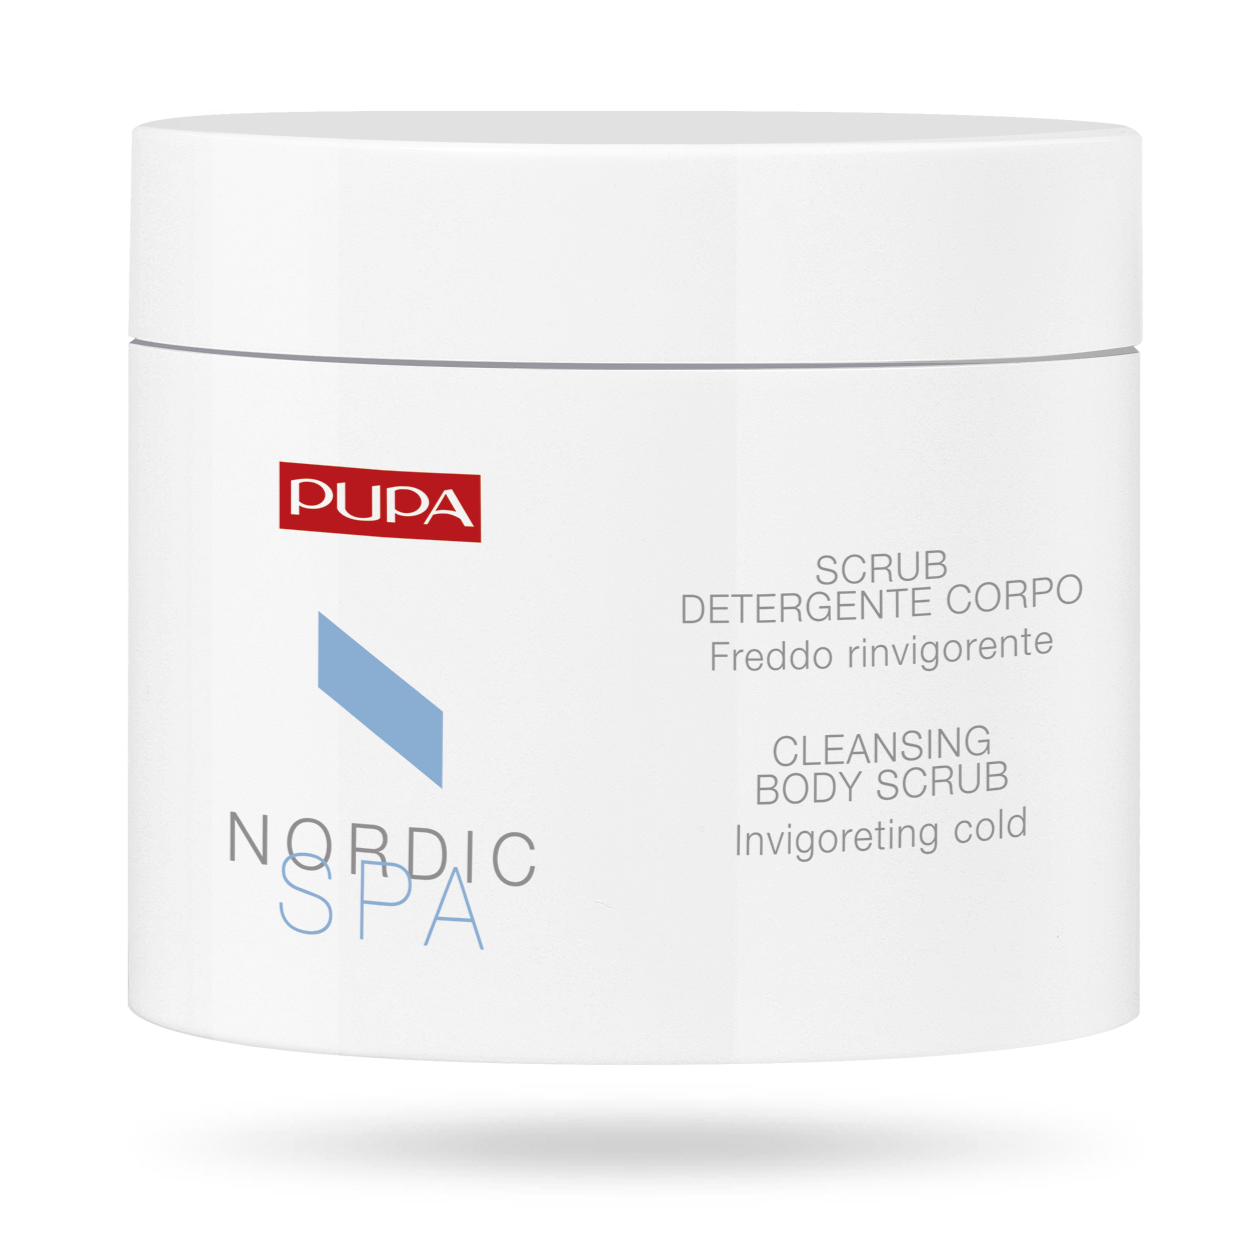 Pupa - Nordic SPA Scrub Detergente Corpo